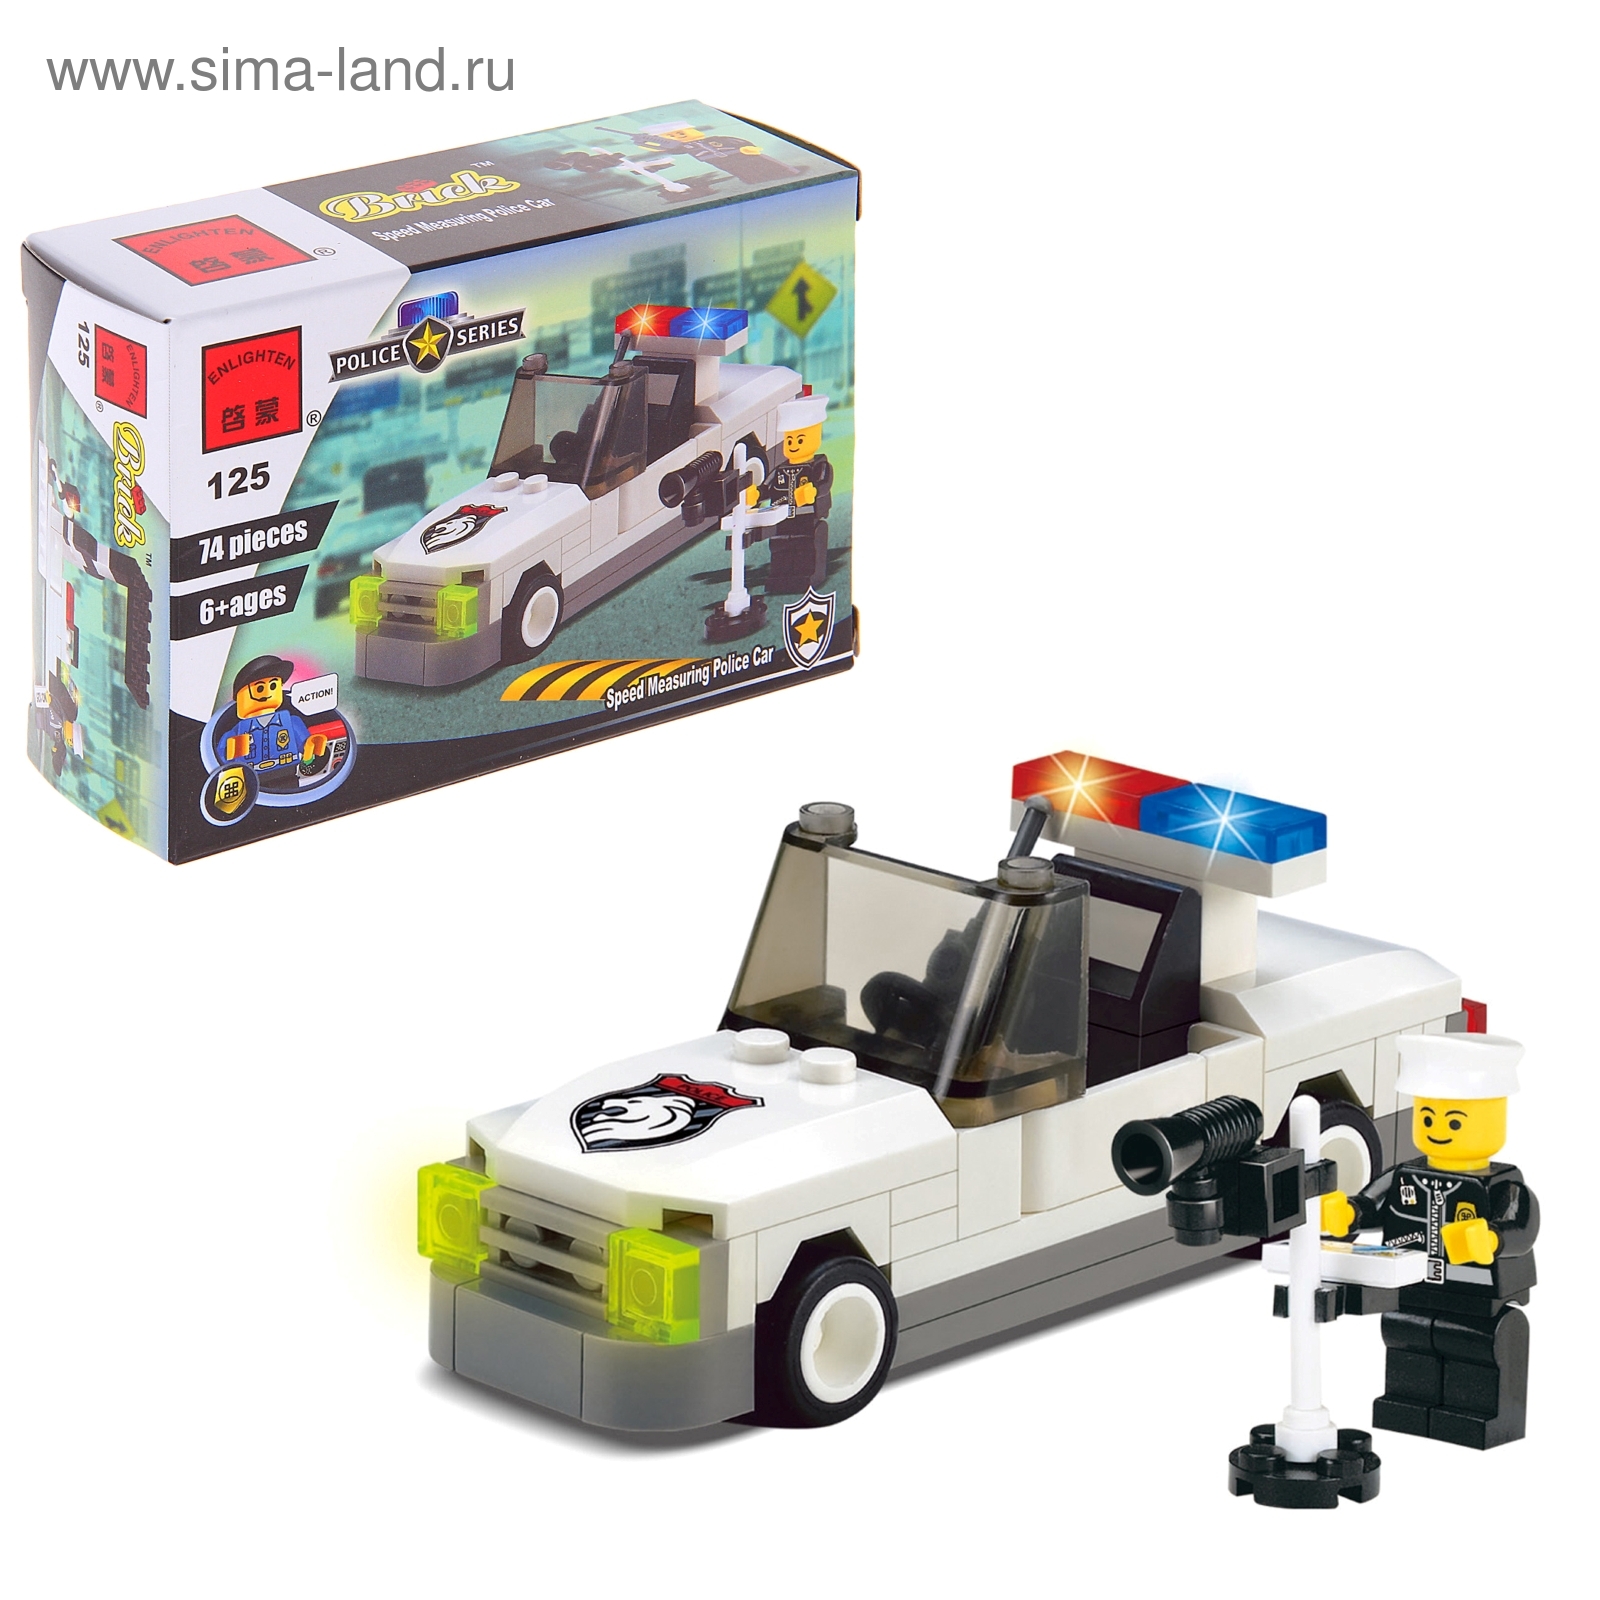 Конструктор LEGO City Полицейская машина Дания. Купить в Best-Toy